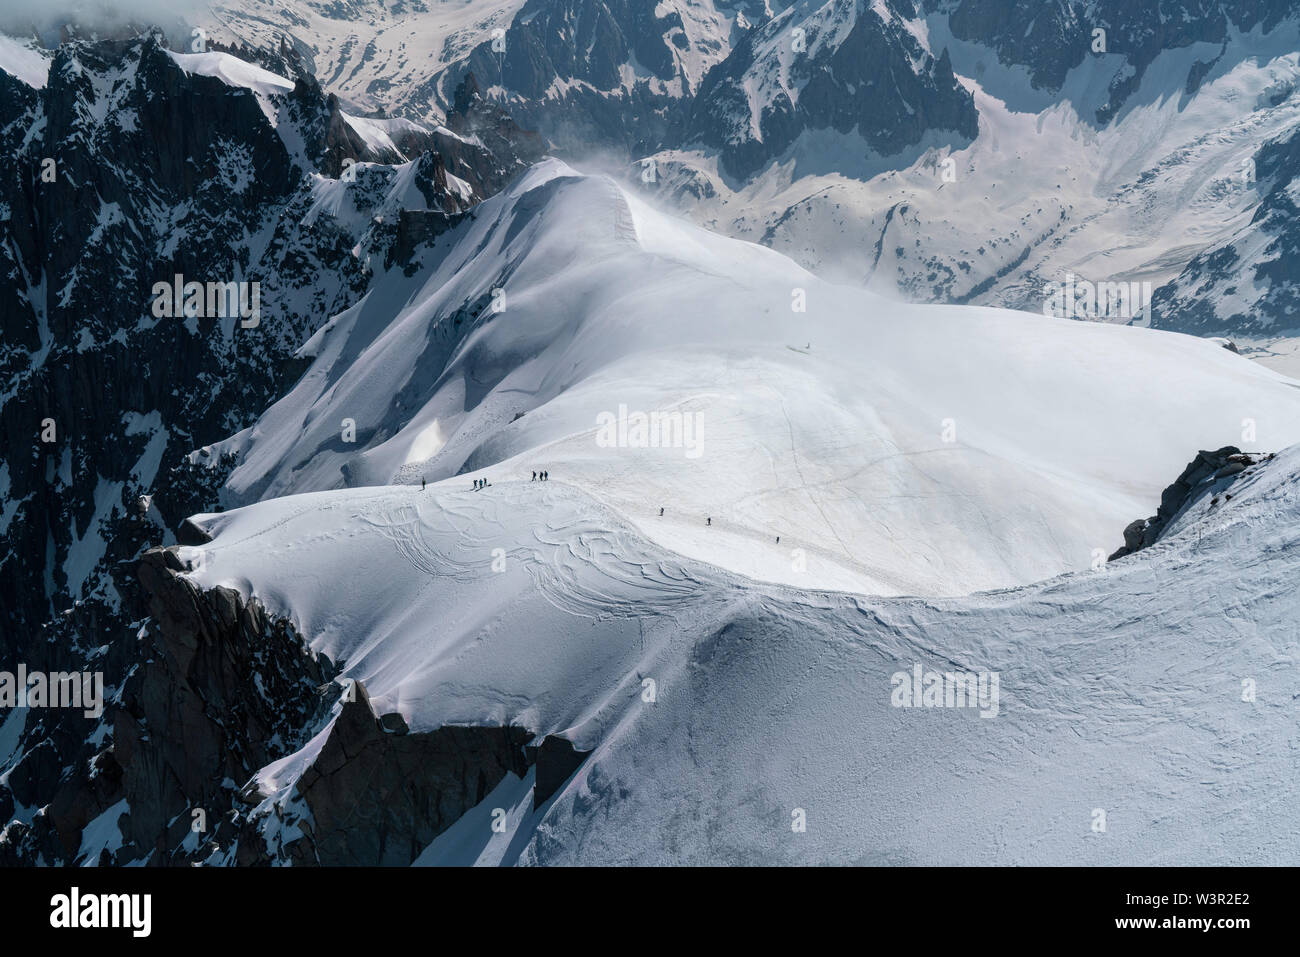 Les alpinistes sur un glacier des Alpes Françaises Banque D'Images